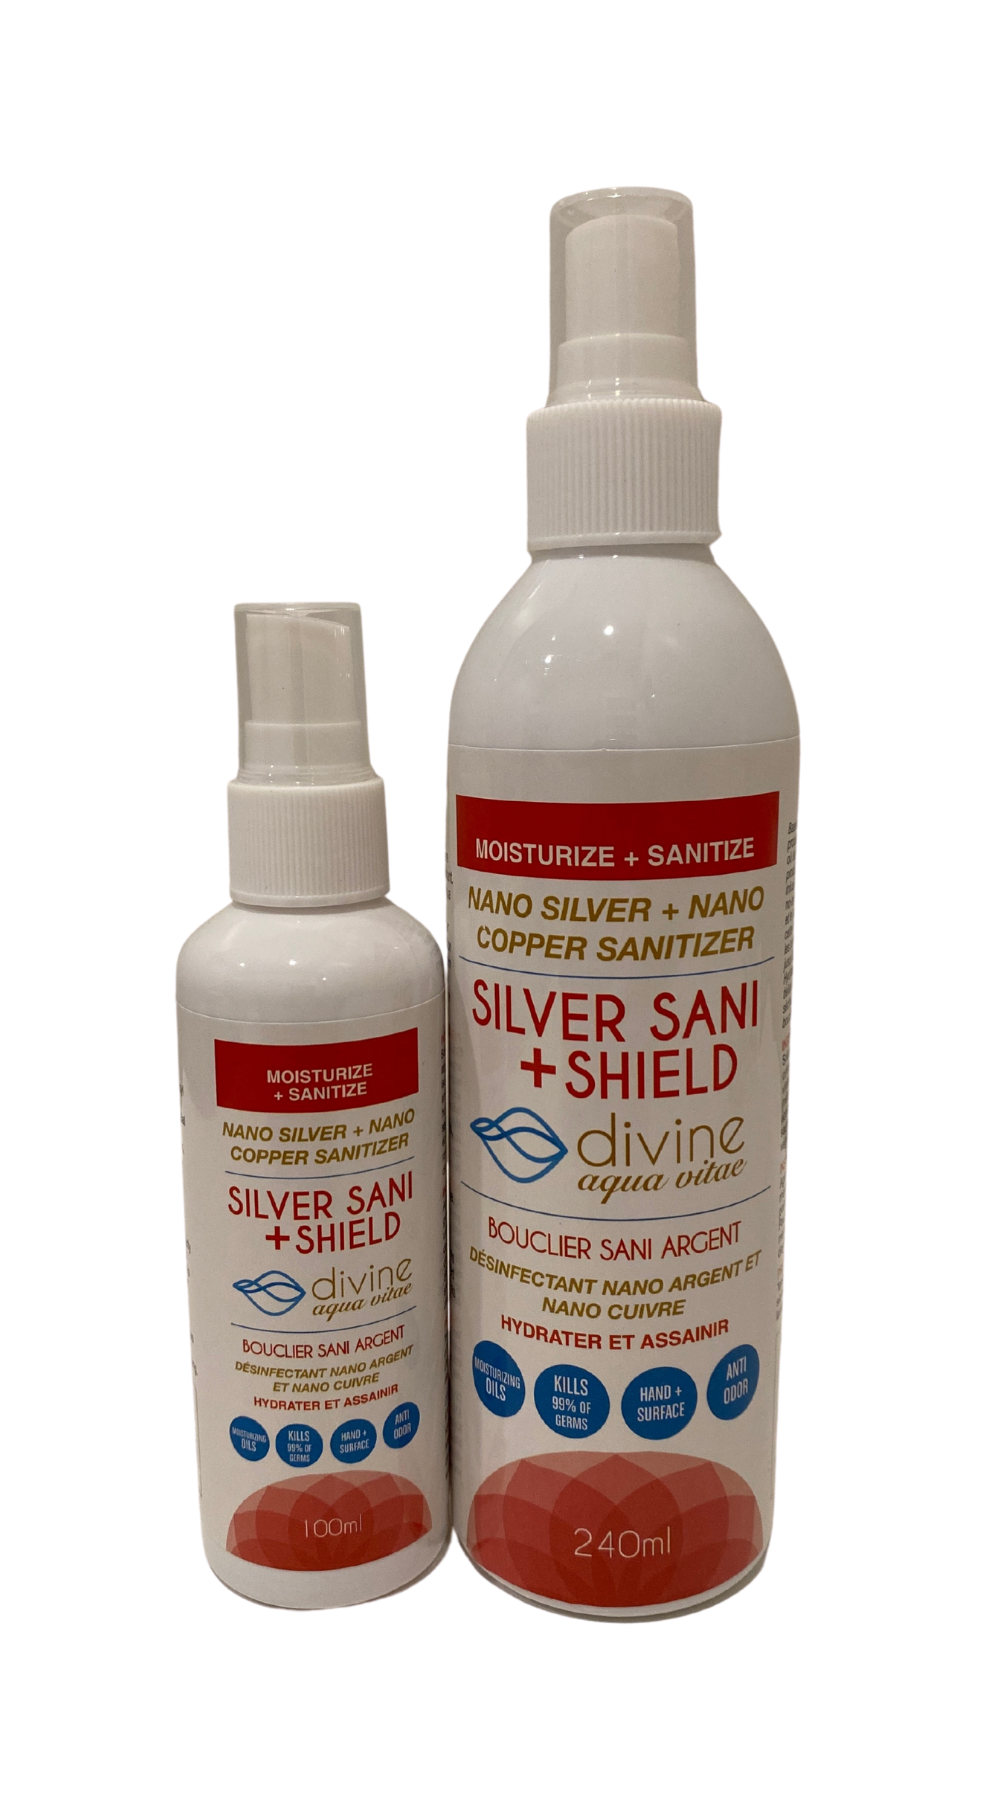 Silver Sani + Shield